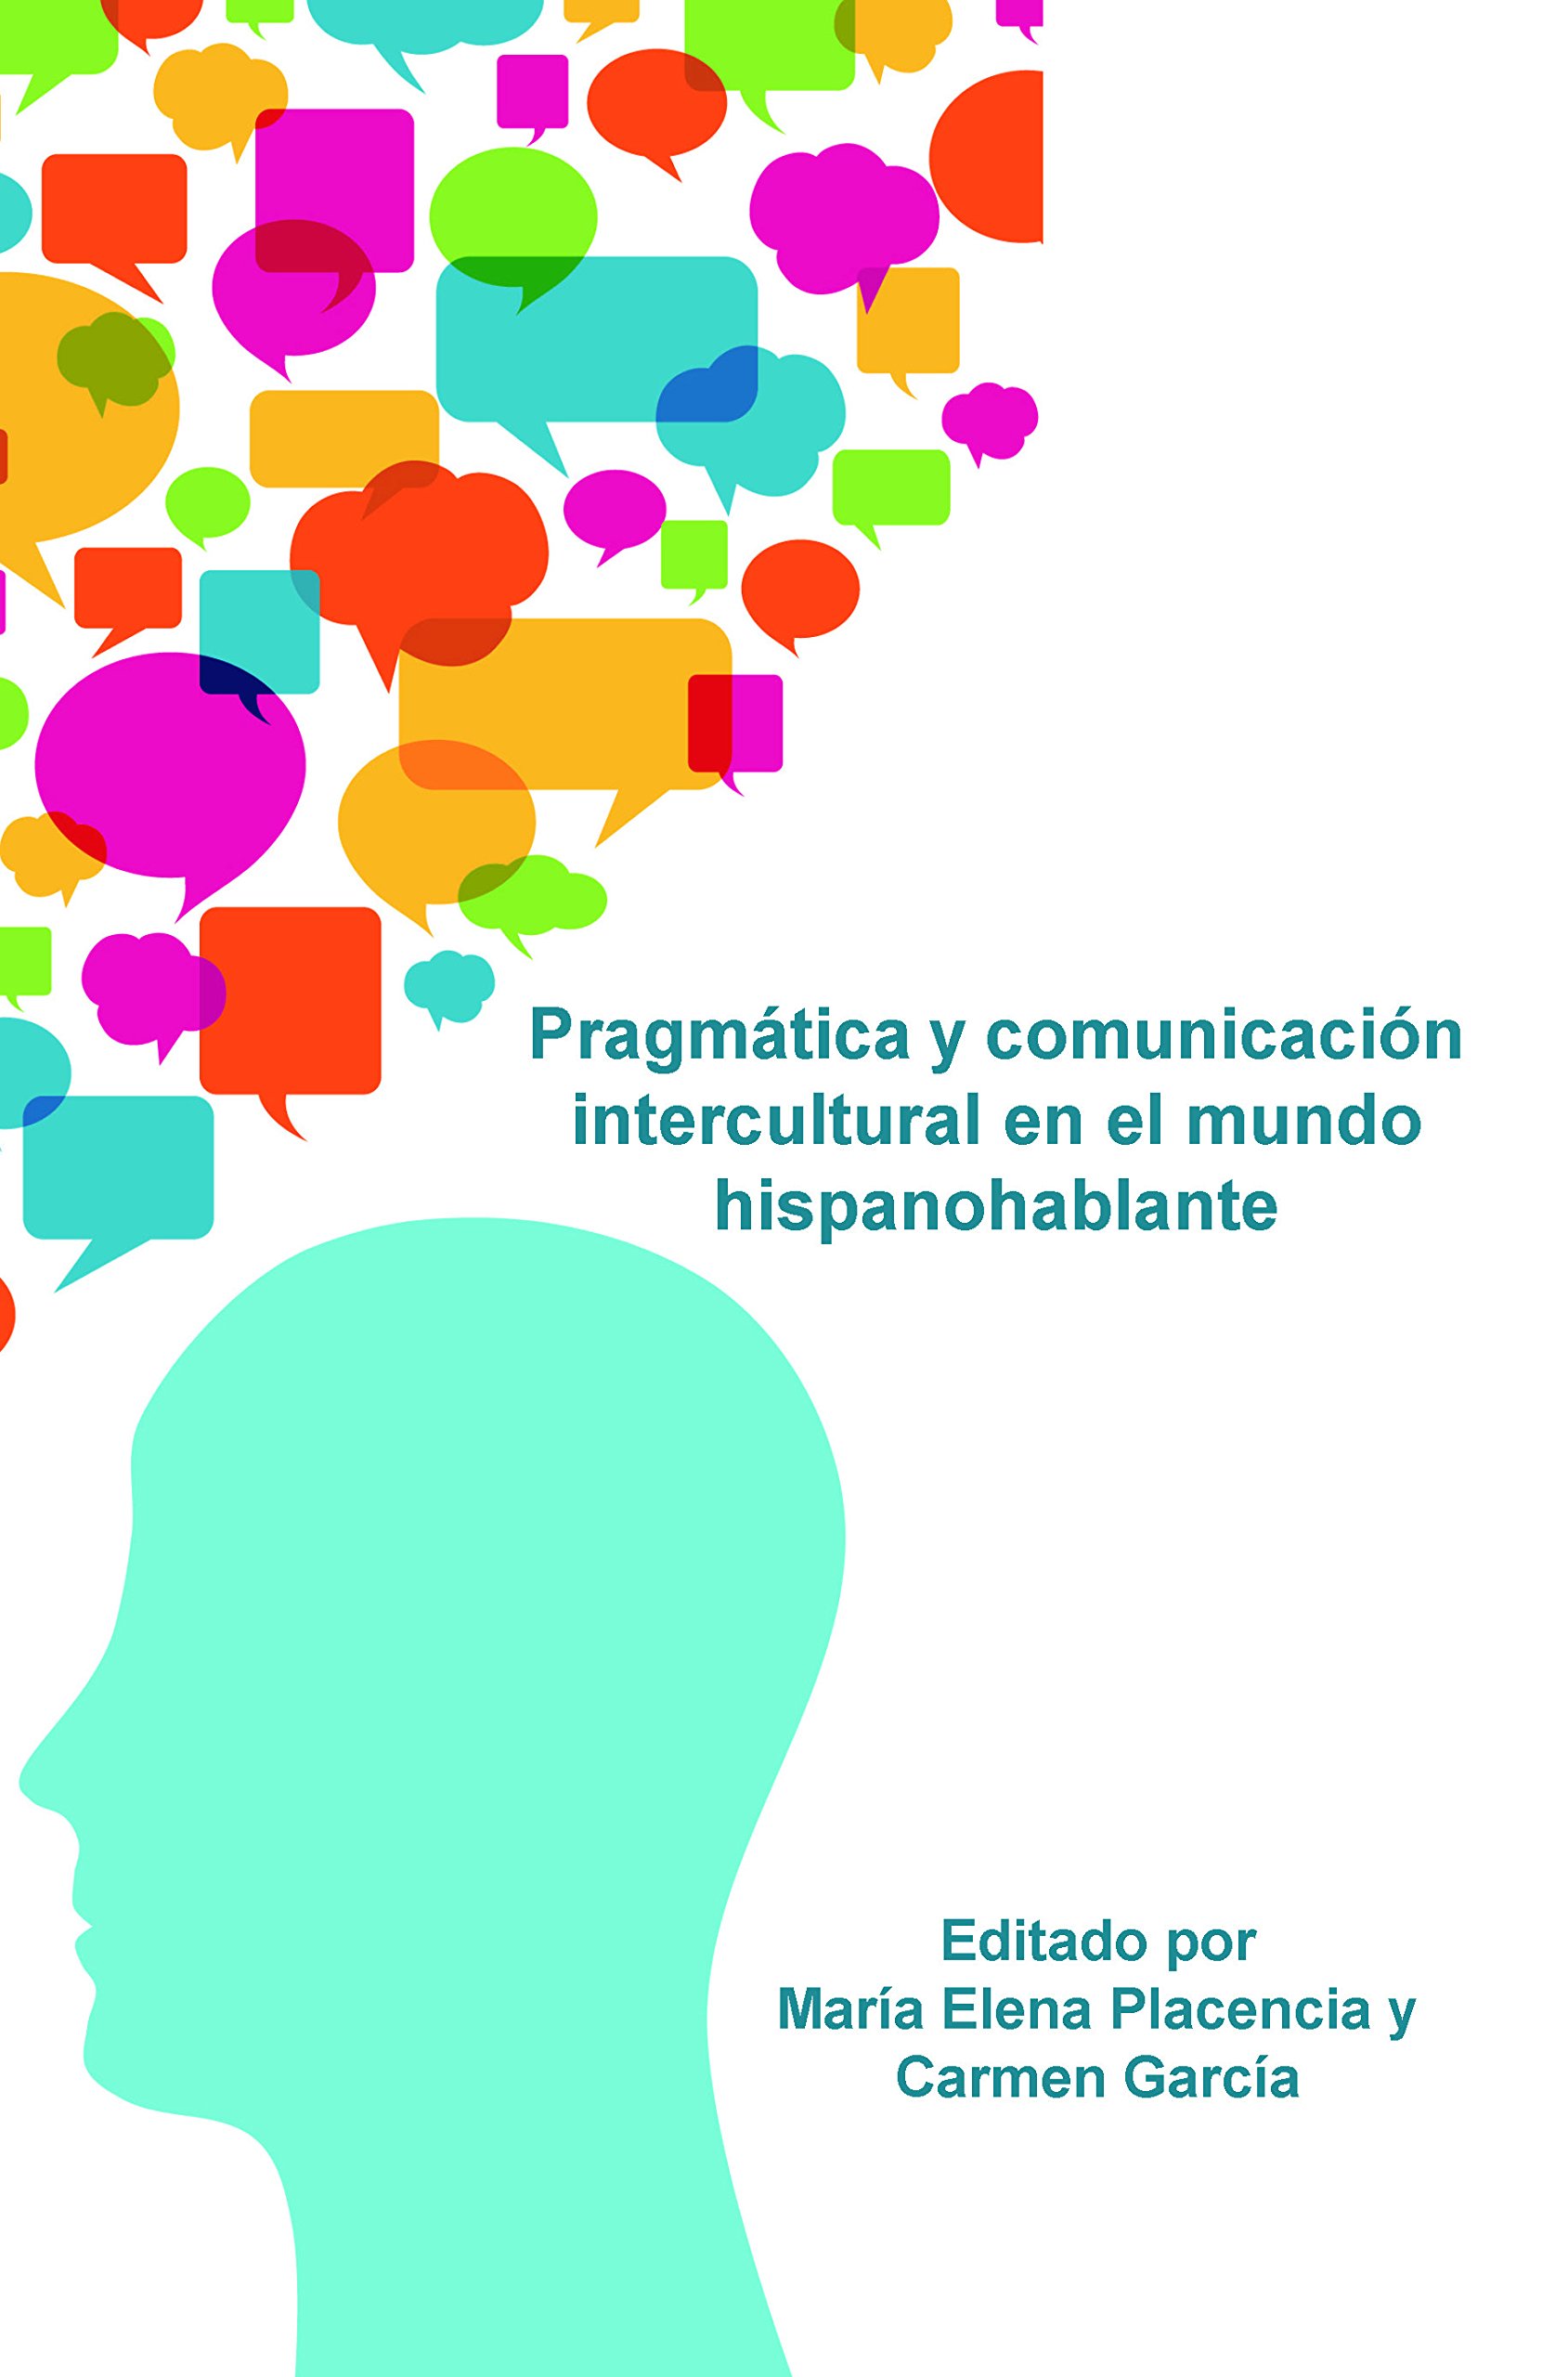 Imagen de portada del libro Pragmática y comunicación intercultural en el mundo hispanohablante